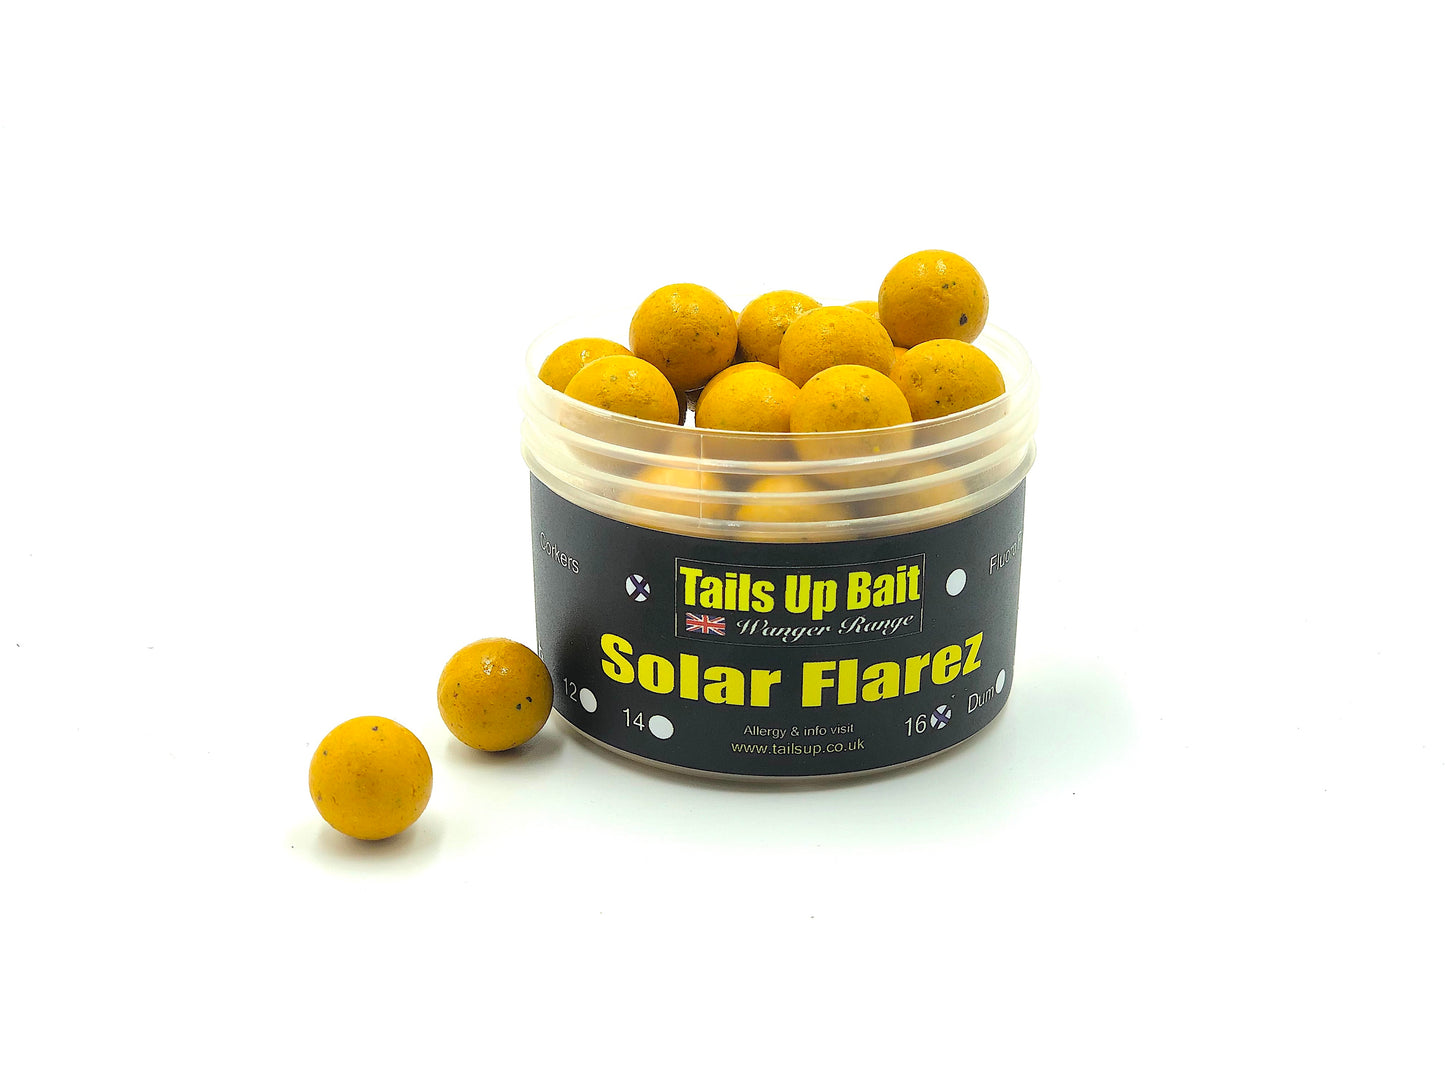 Solar Flarez - Pineapple & Butyric Acid